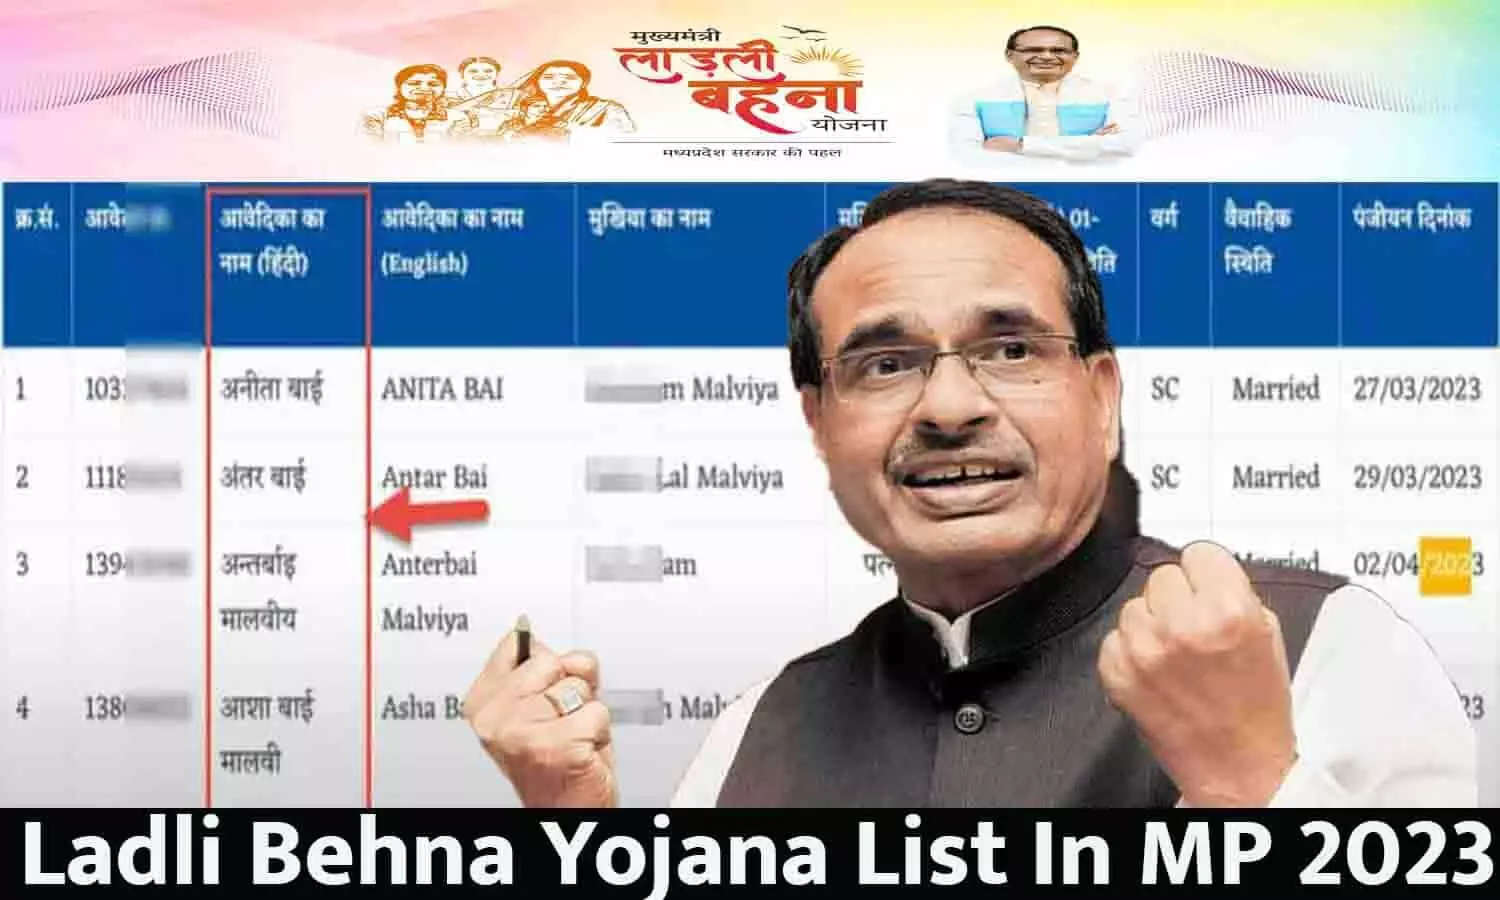 Ladli Behna Yojana Jilewar List In MP: लाड़ली बहना योजना की जिलेवार लिस्ट जारी, चेक करे लिस्ट में अपना नाम...